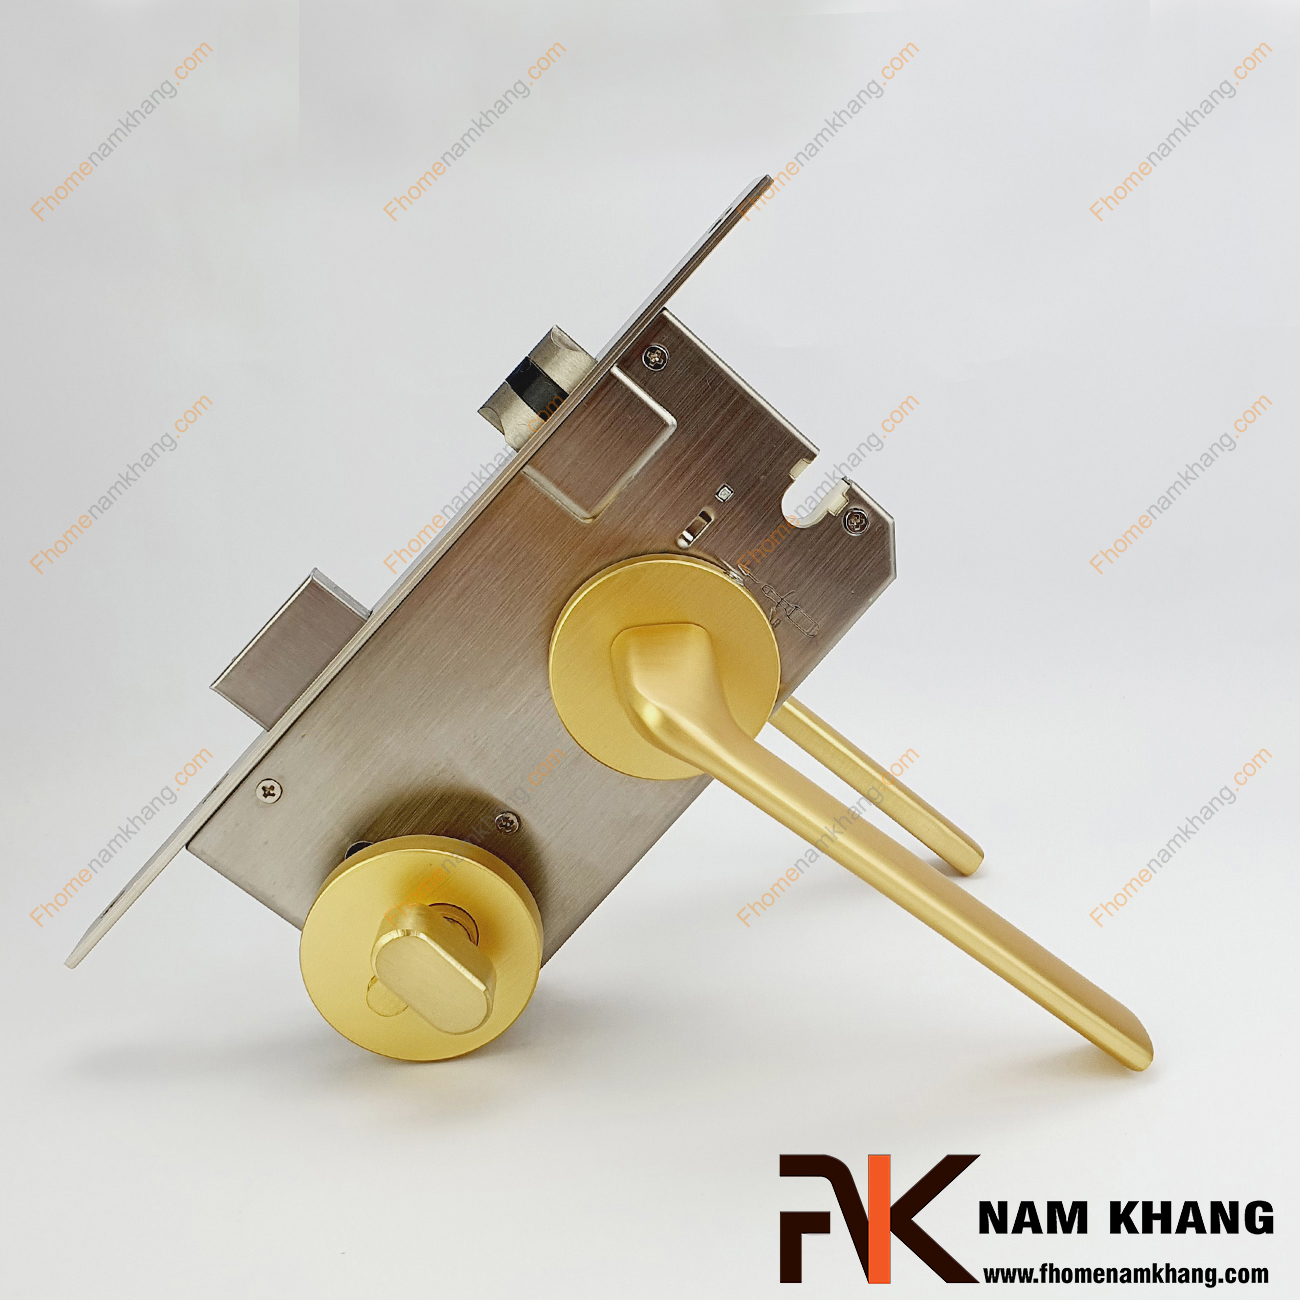 Khóa cửa phân thể dạng trơn màu vàng mờ NK569-VM được sản xuất từ hợp kim cao cấp. Dòng khóa này có thiết kế đơn giản, nhỏ gọn, phù hợp lắp đặt cho đa dạng không gian thiết kế nhà ở.